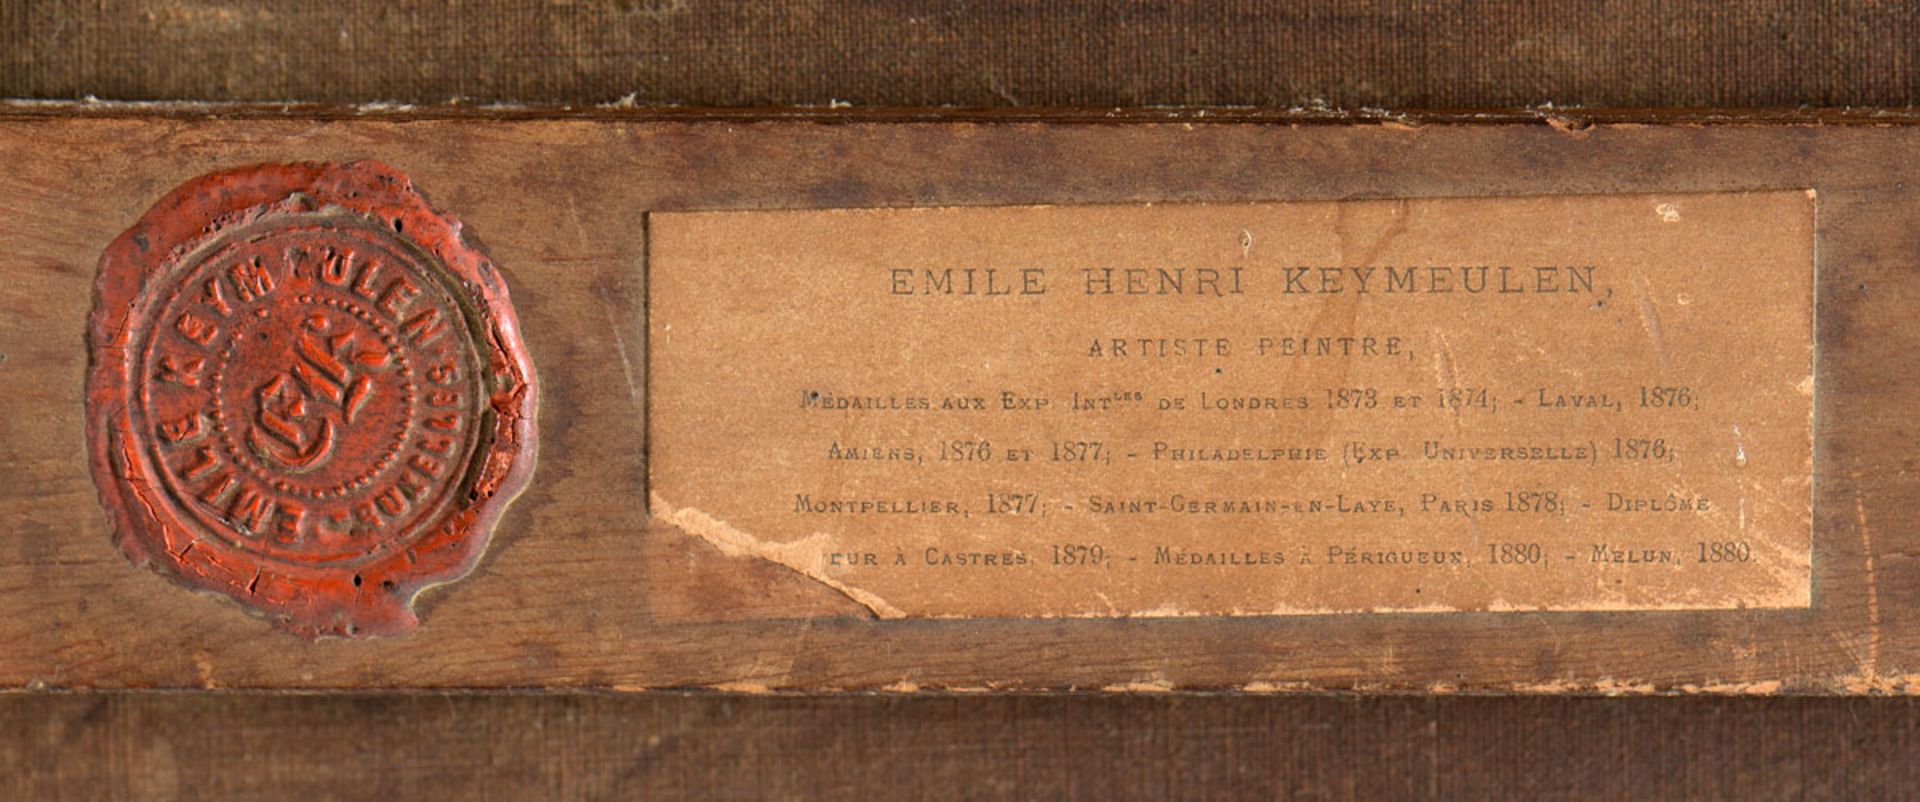 Keymeulen, Emile Henri 1840 Antwerpen - 1882 Laeken - Image 4 of 4